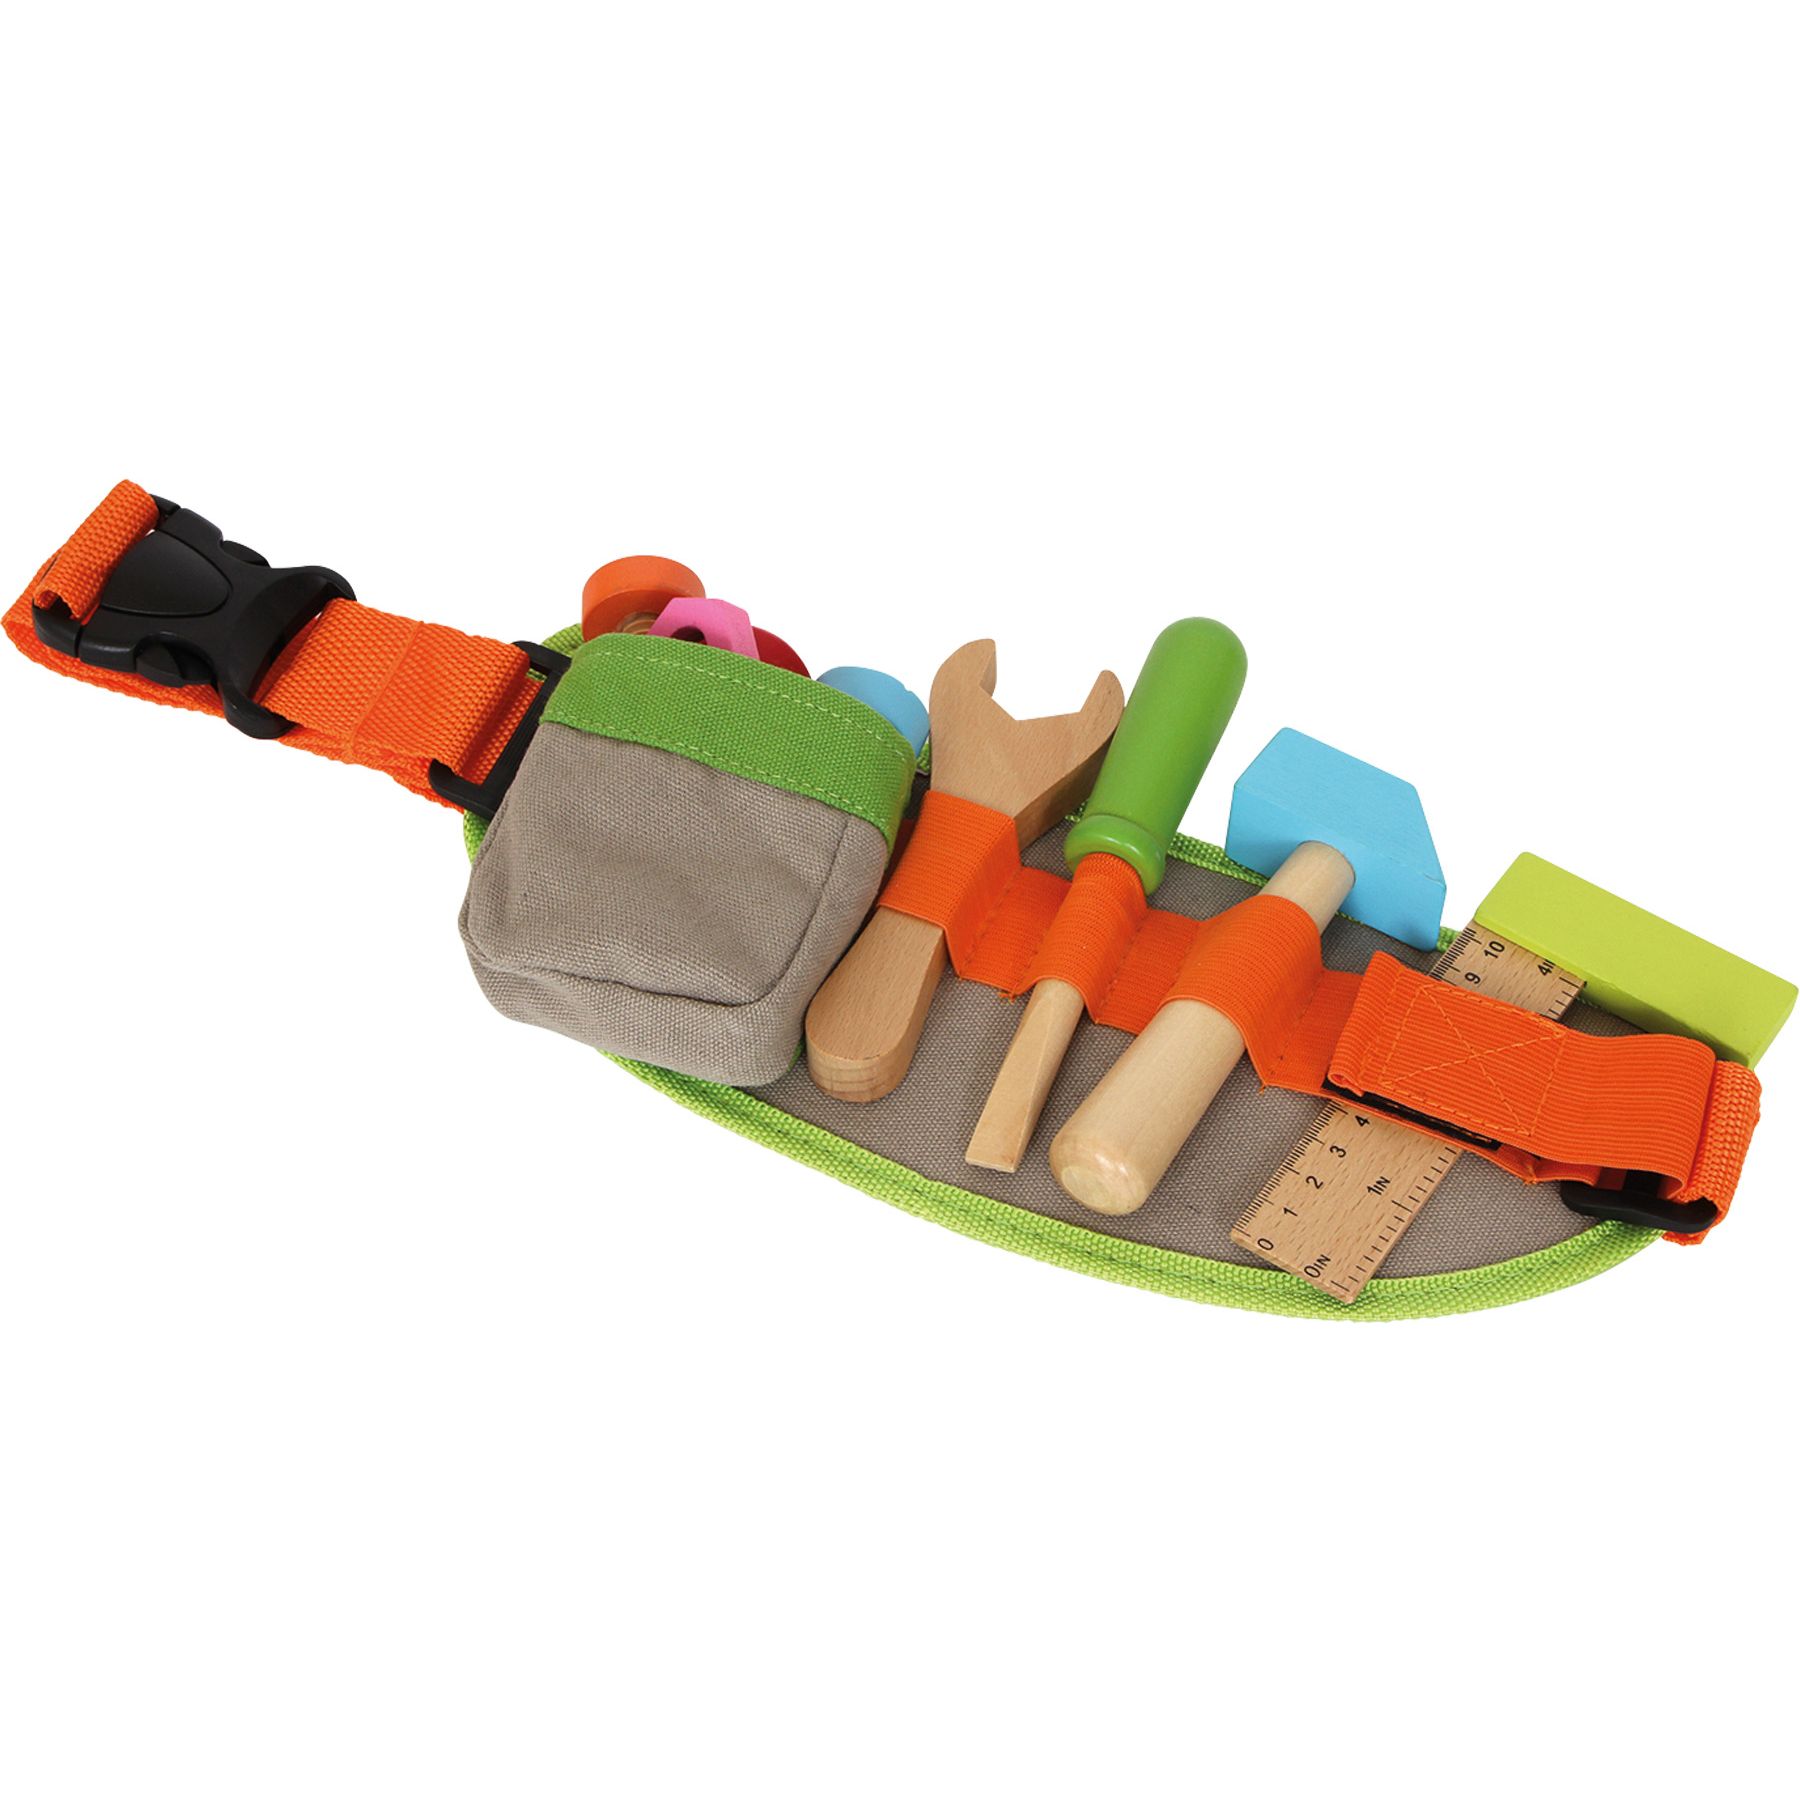 Cinturón de herramientas de juguete Shopmami